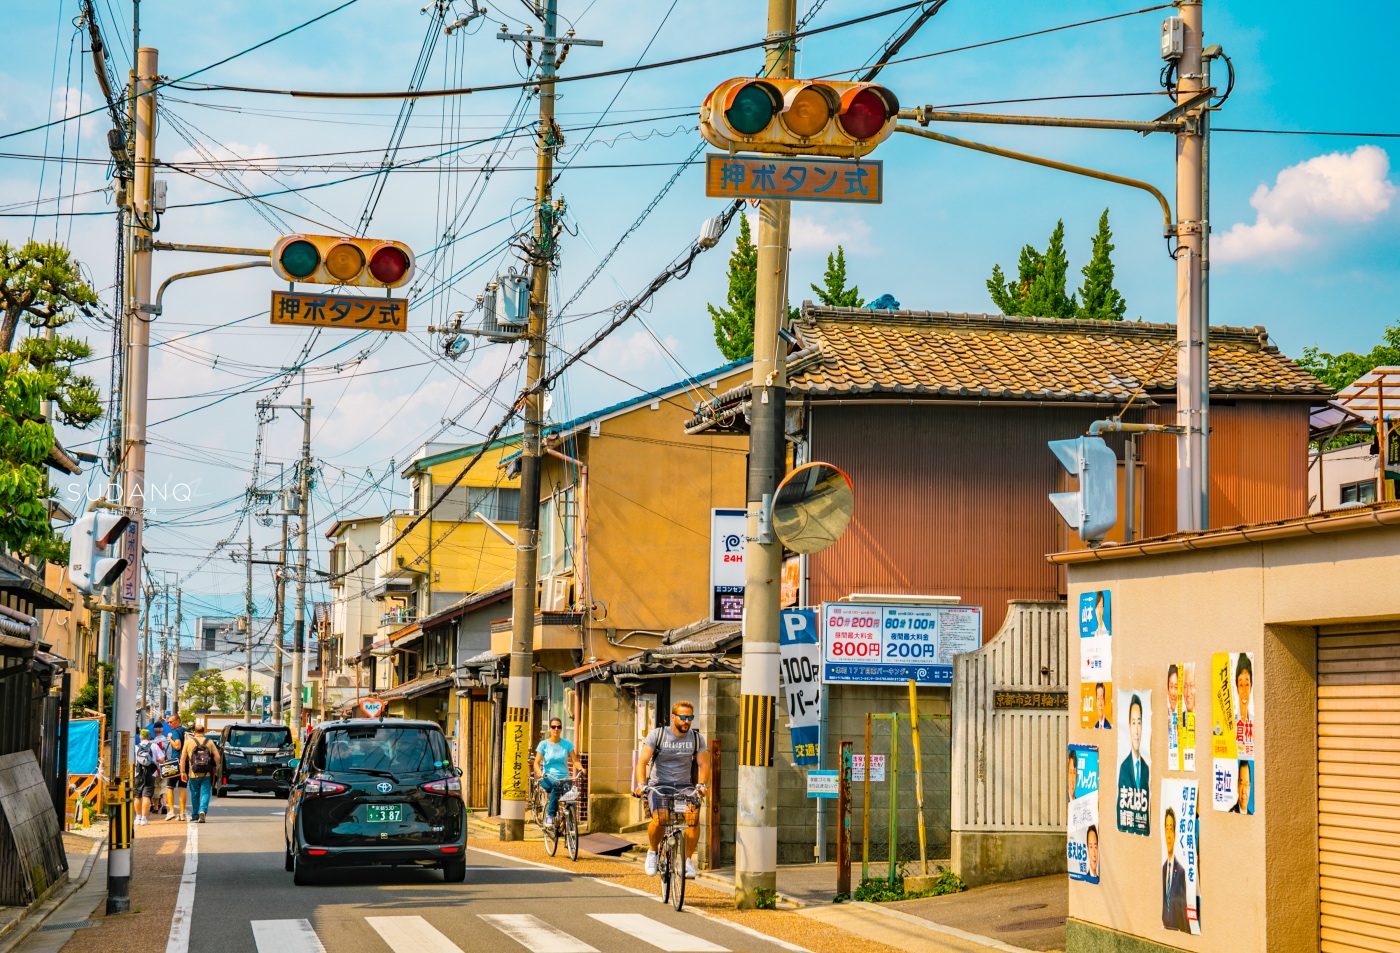 日本经济发达,为何街头都是电线杆?中国游客: